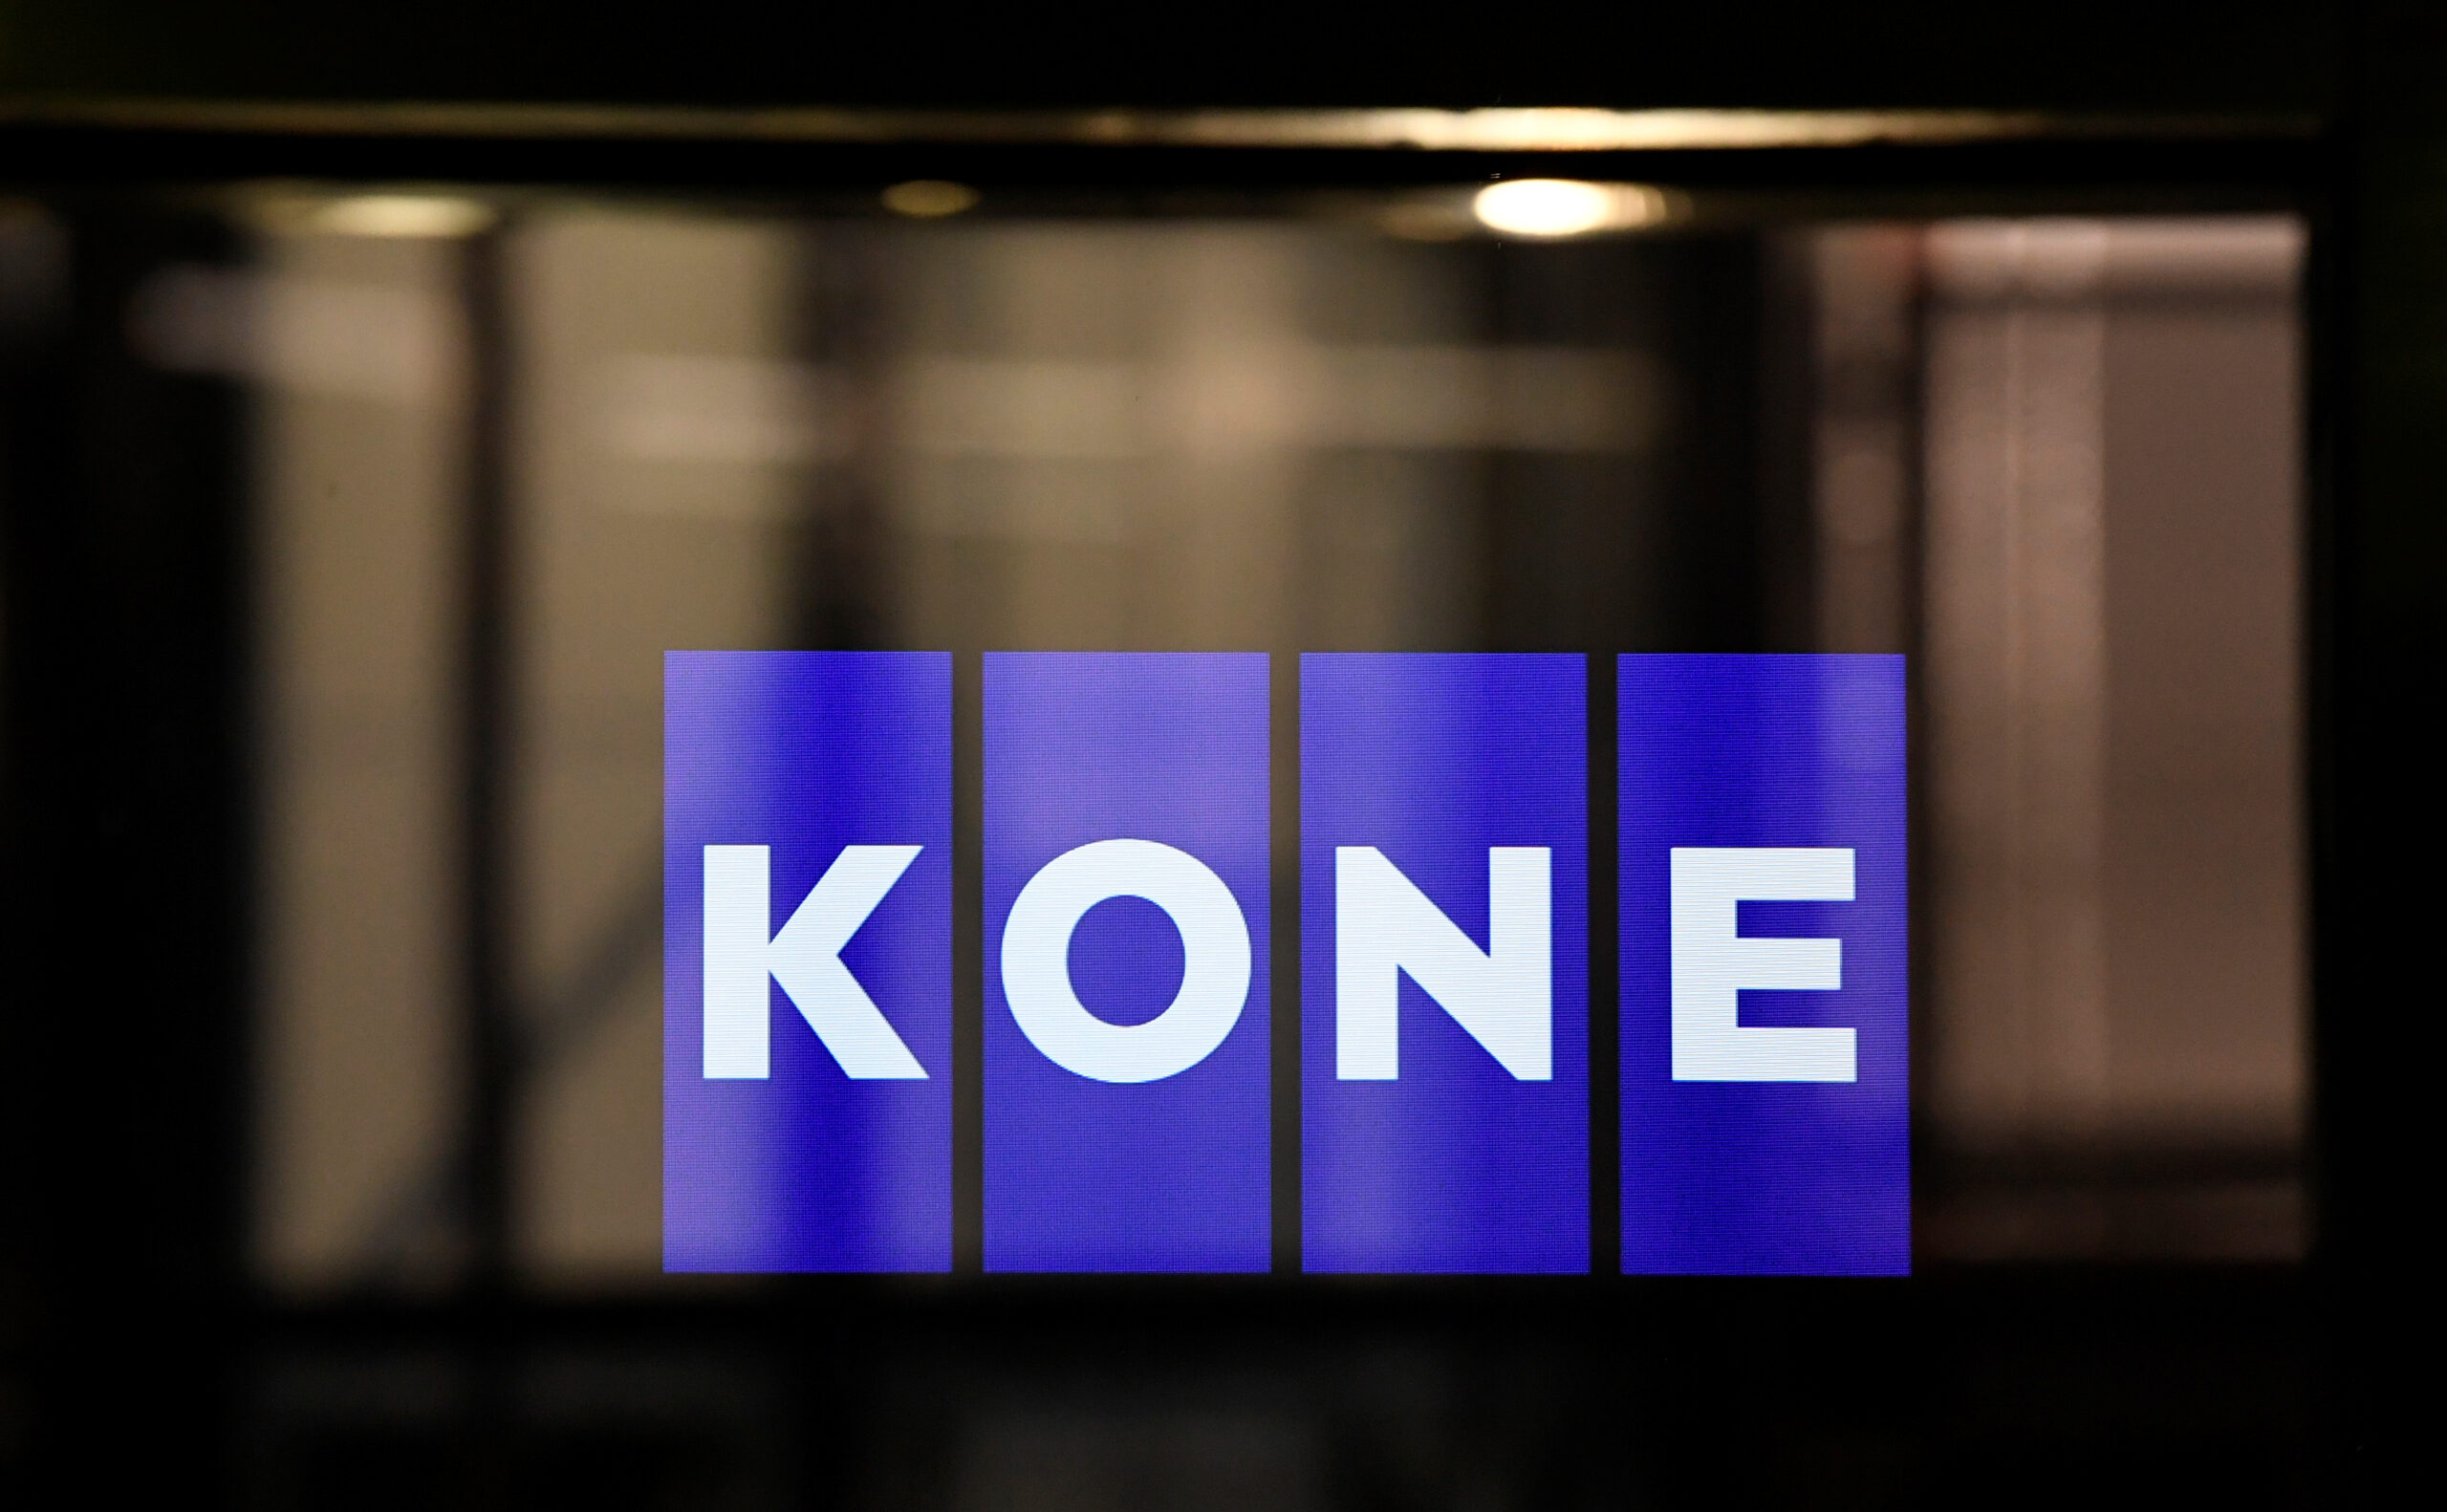 Kone is hiring | Graduate Engineer Trainee | ctc 4-6 lpa | Apply here!